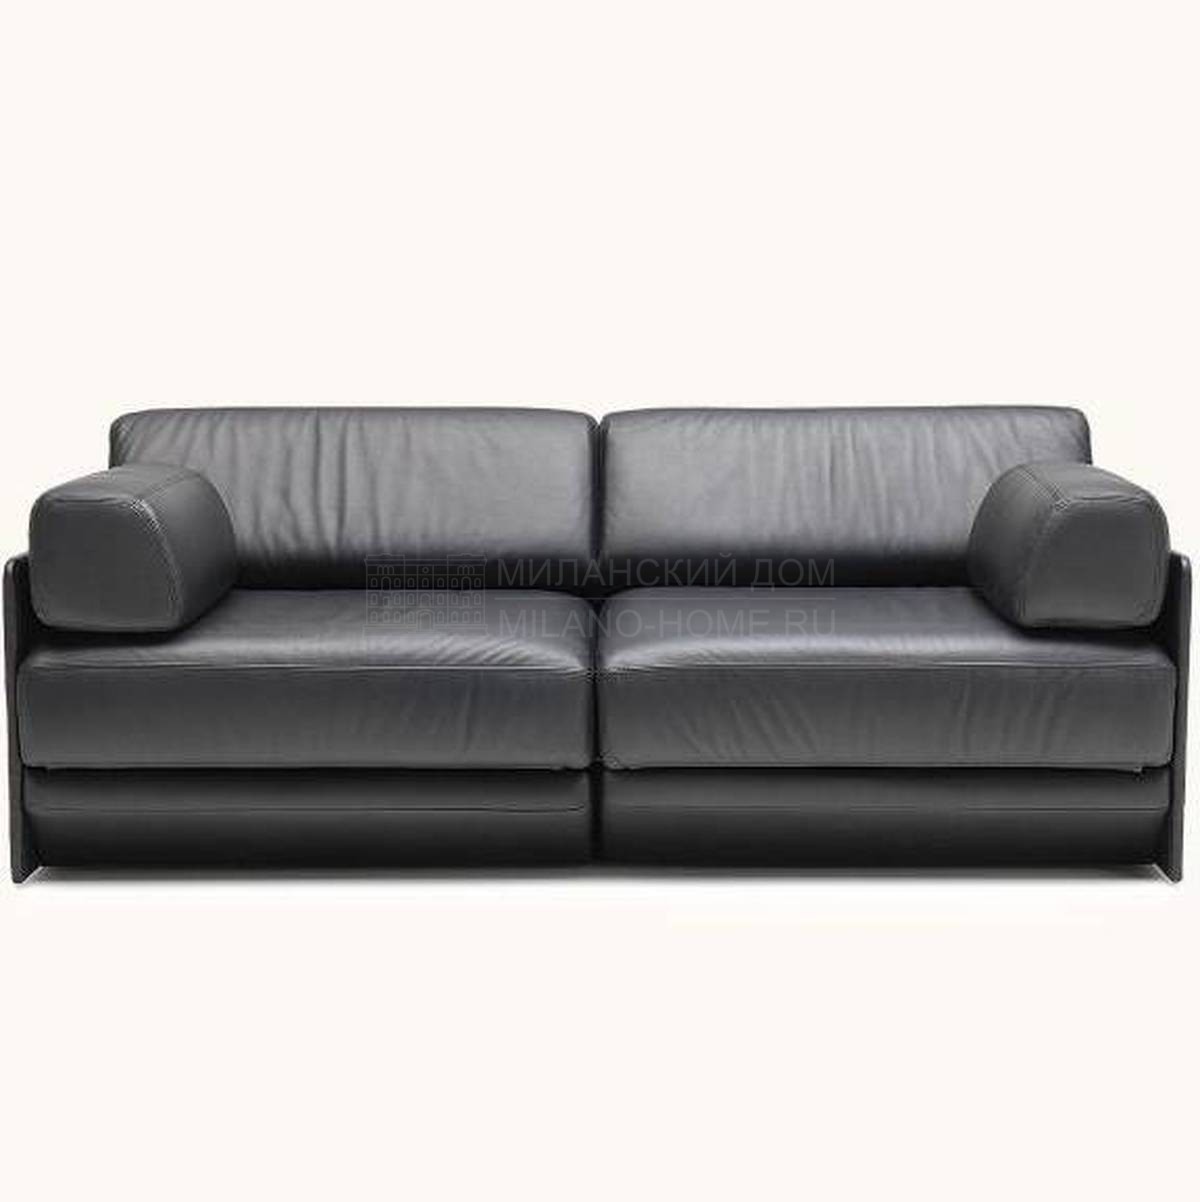 Прямой диван DS-76 sofa из Швейцарии фабрики DE SEDE